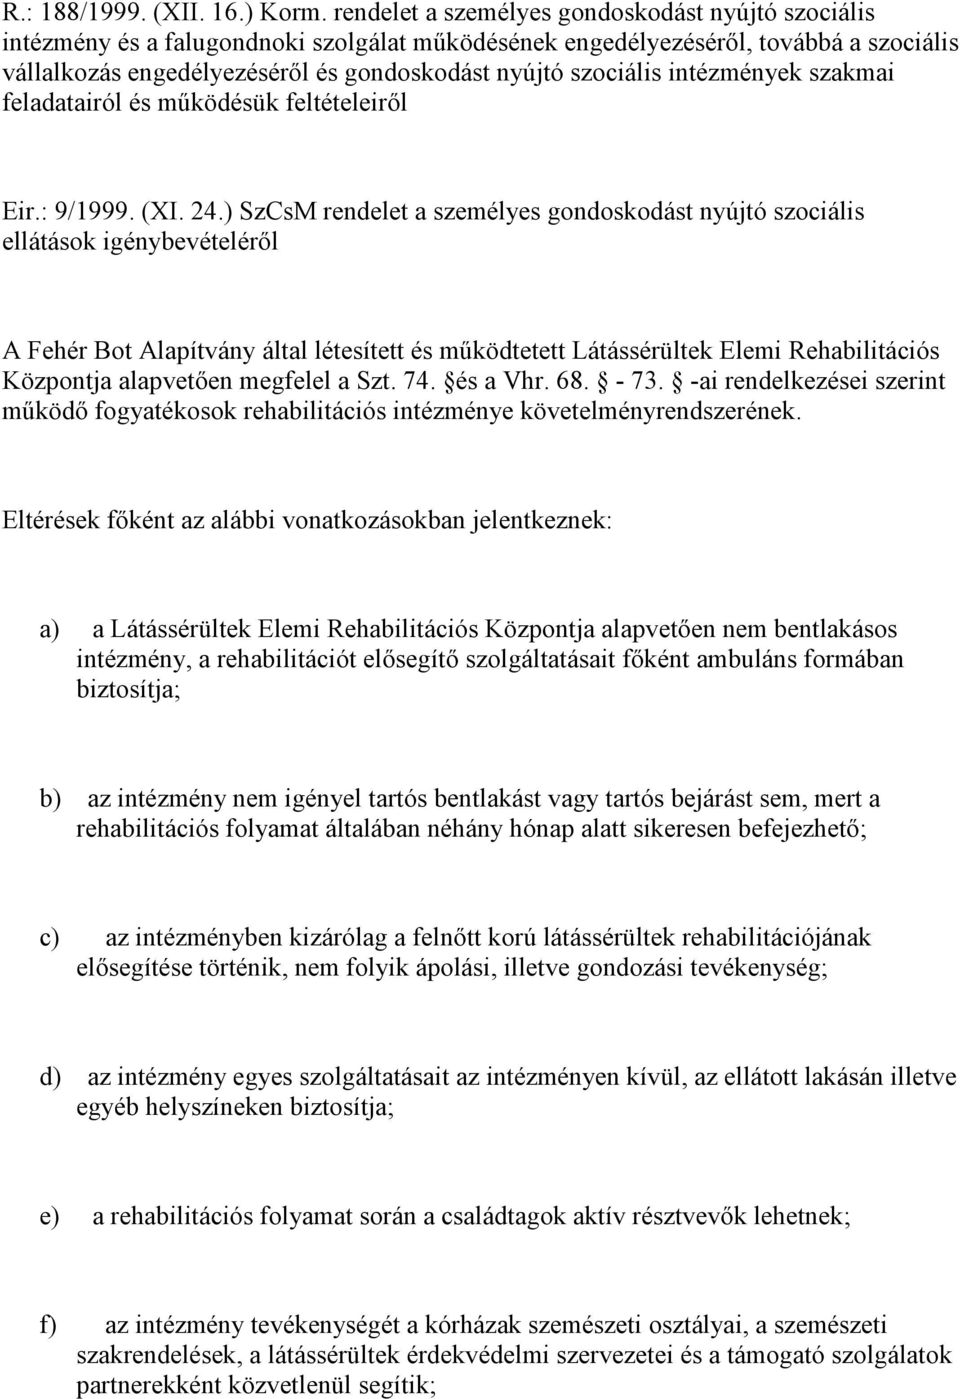 szociális intézmények szakmai feladatairól és működésük feltételeiről Eir.: 9/1999. (XI. 24.